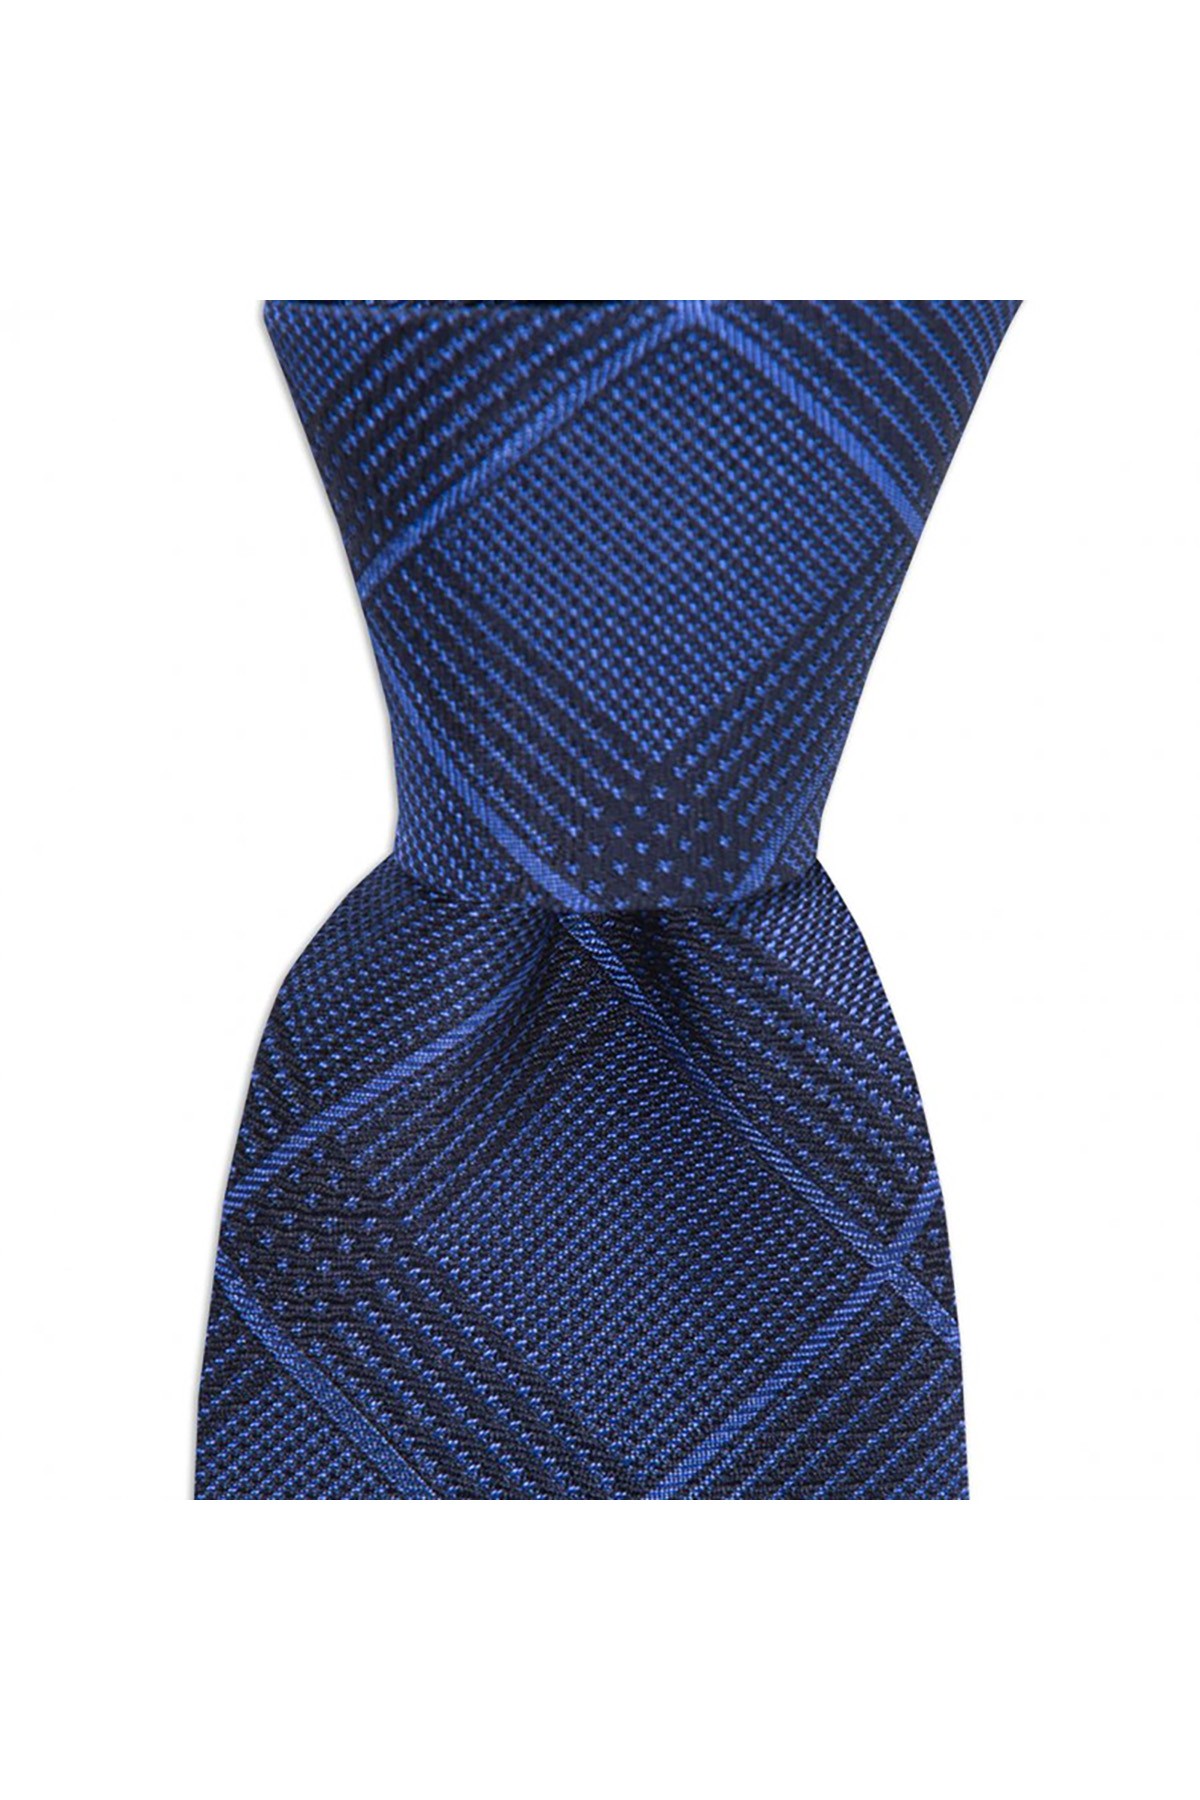 Ekose desenli 8 cm genişliğinde ipek kravat - Koyu mavi